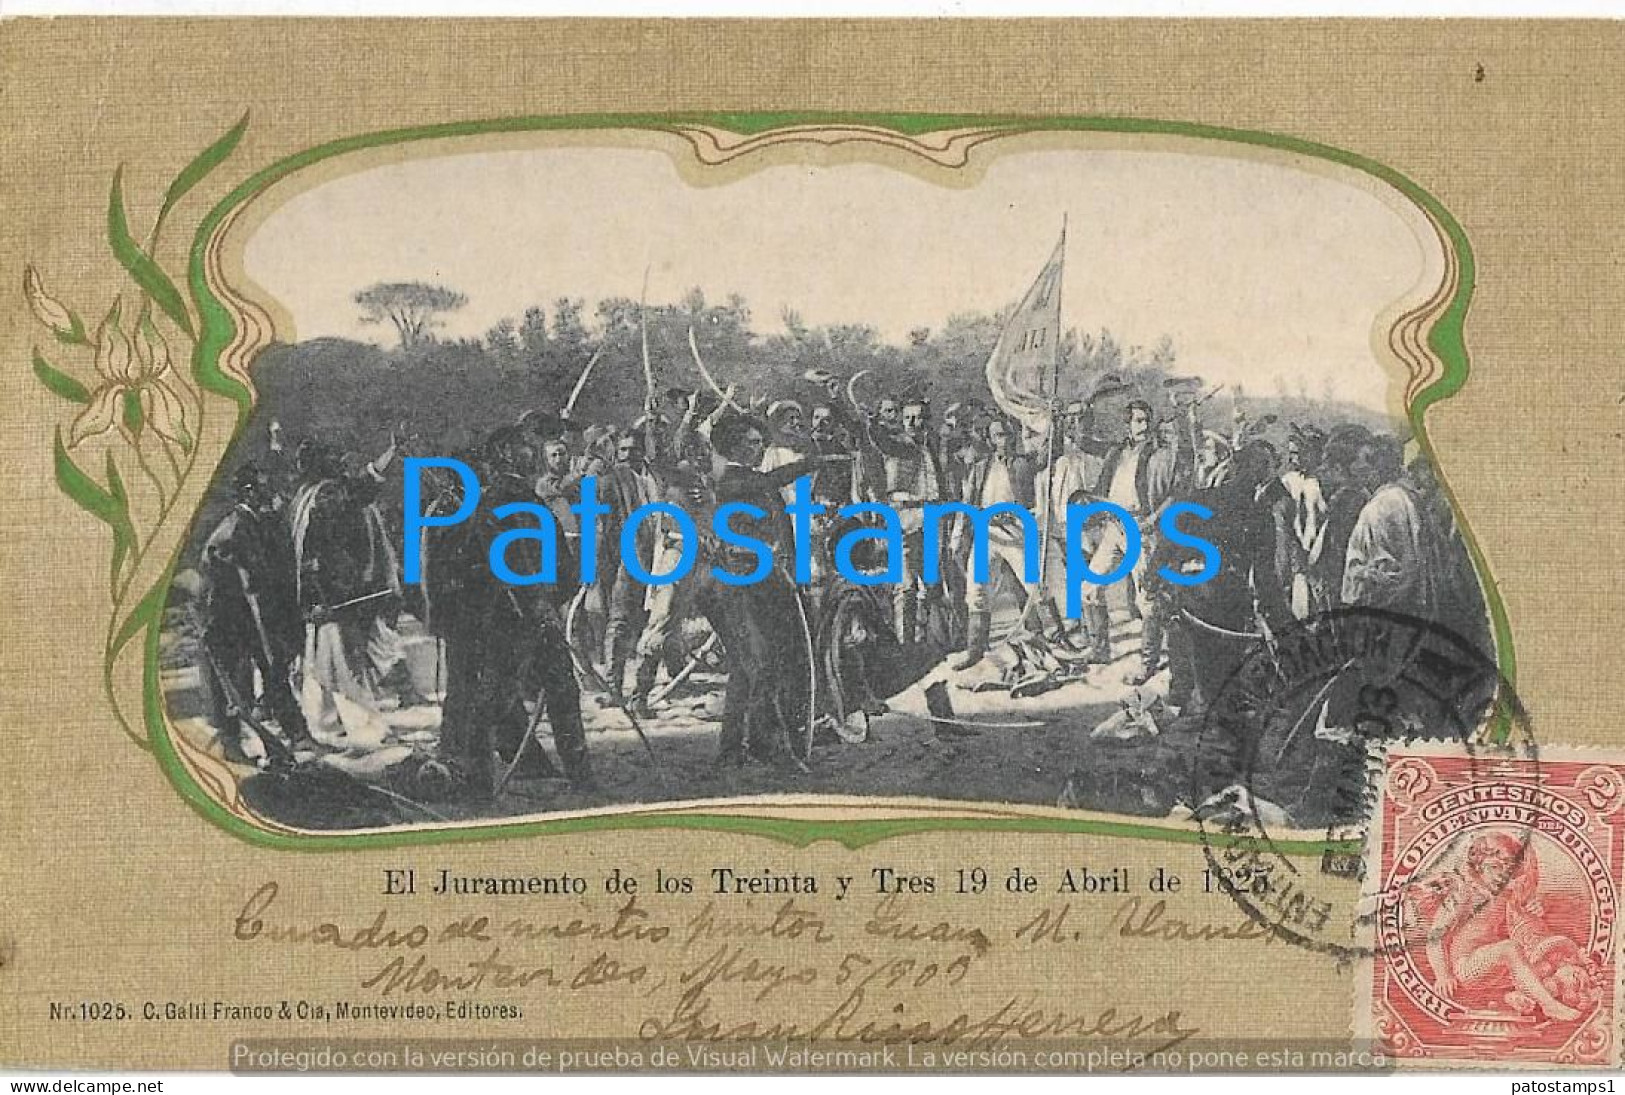 227766 URUGUAY PATRIOTIC JURAMENTO DE LOS TREINTA Y TRES CIRCULATED TO BRAZIL POSTAL POSTCARD - Uruguay